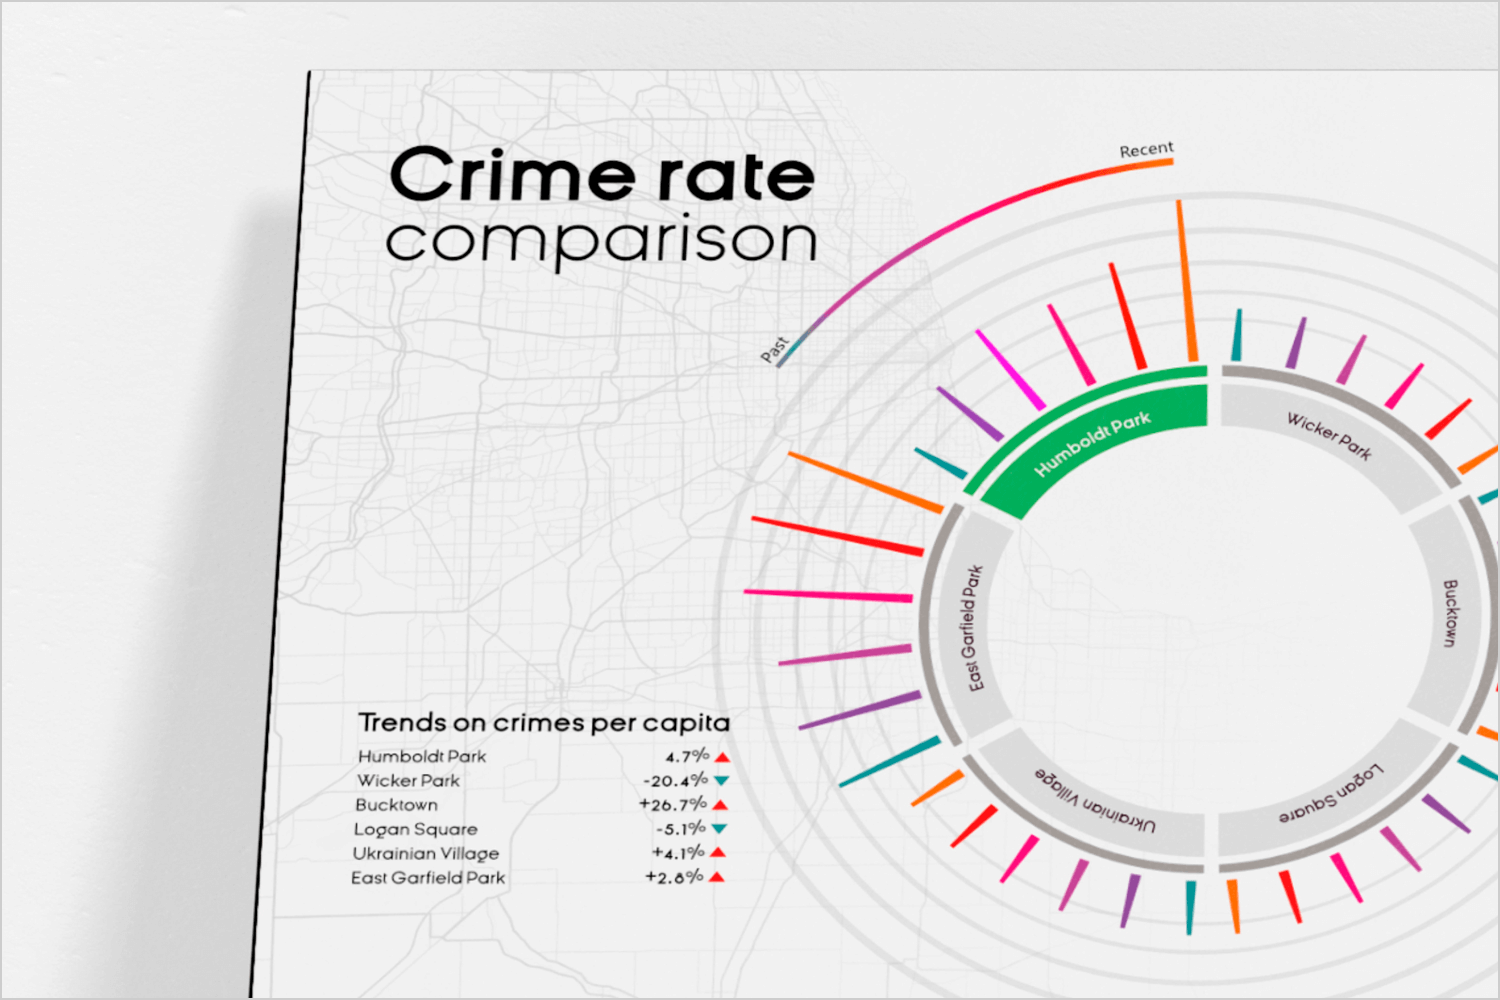 Crime rate comparison visualization with trends on crimes per capita.